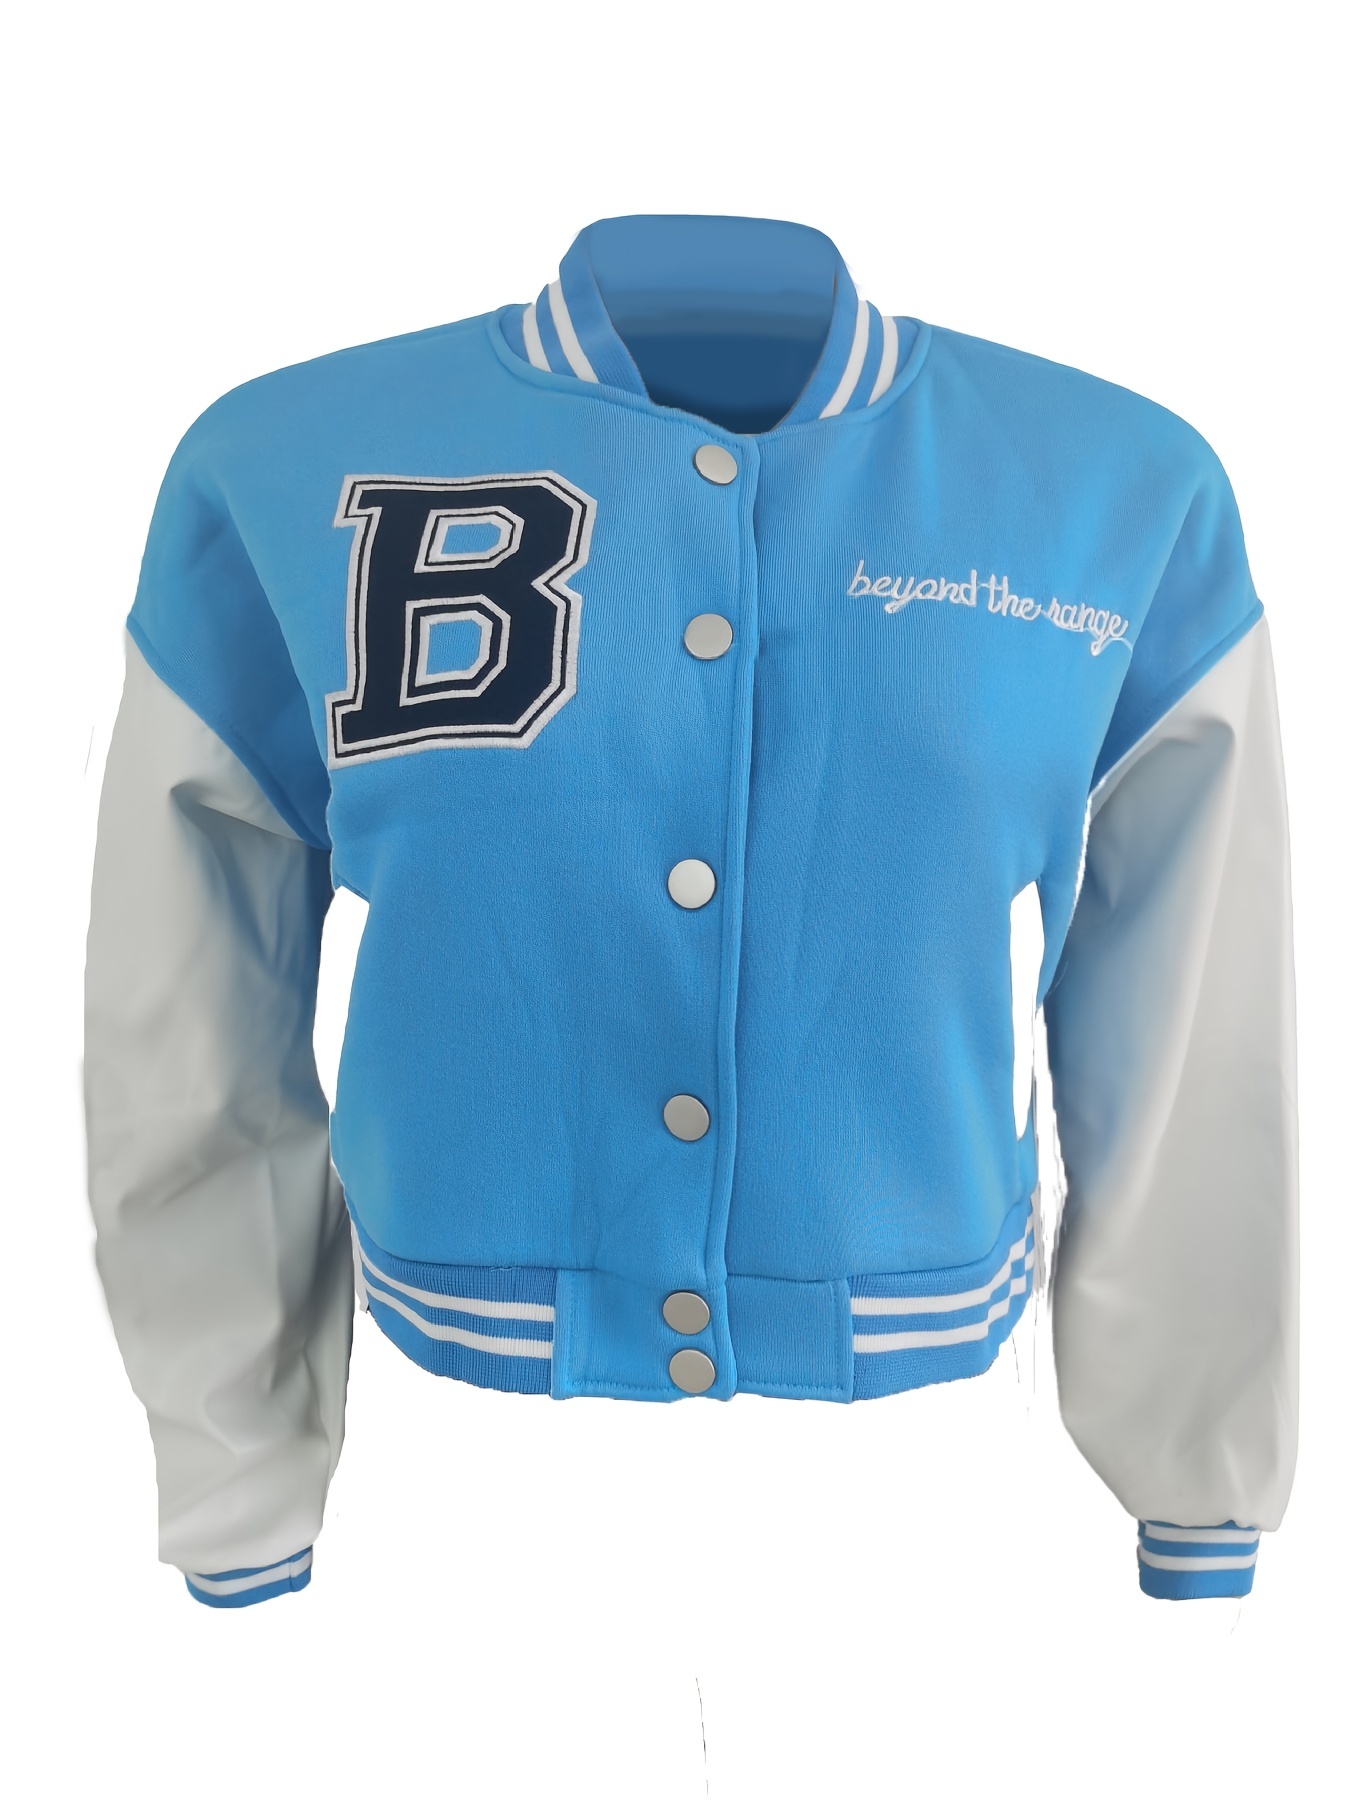 Women Cropped Varsity Jacket Colorblock Letterman Baseball Jacket Y2K Streetwear